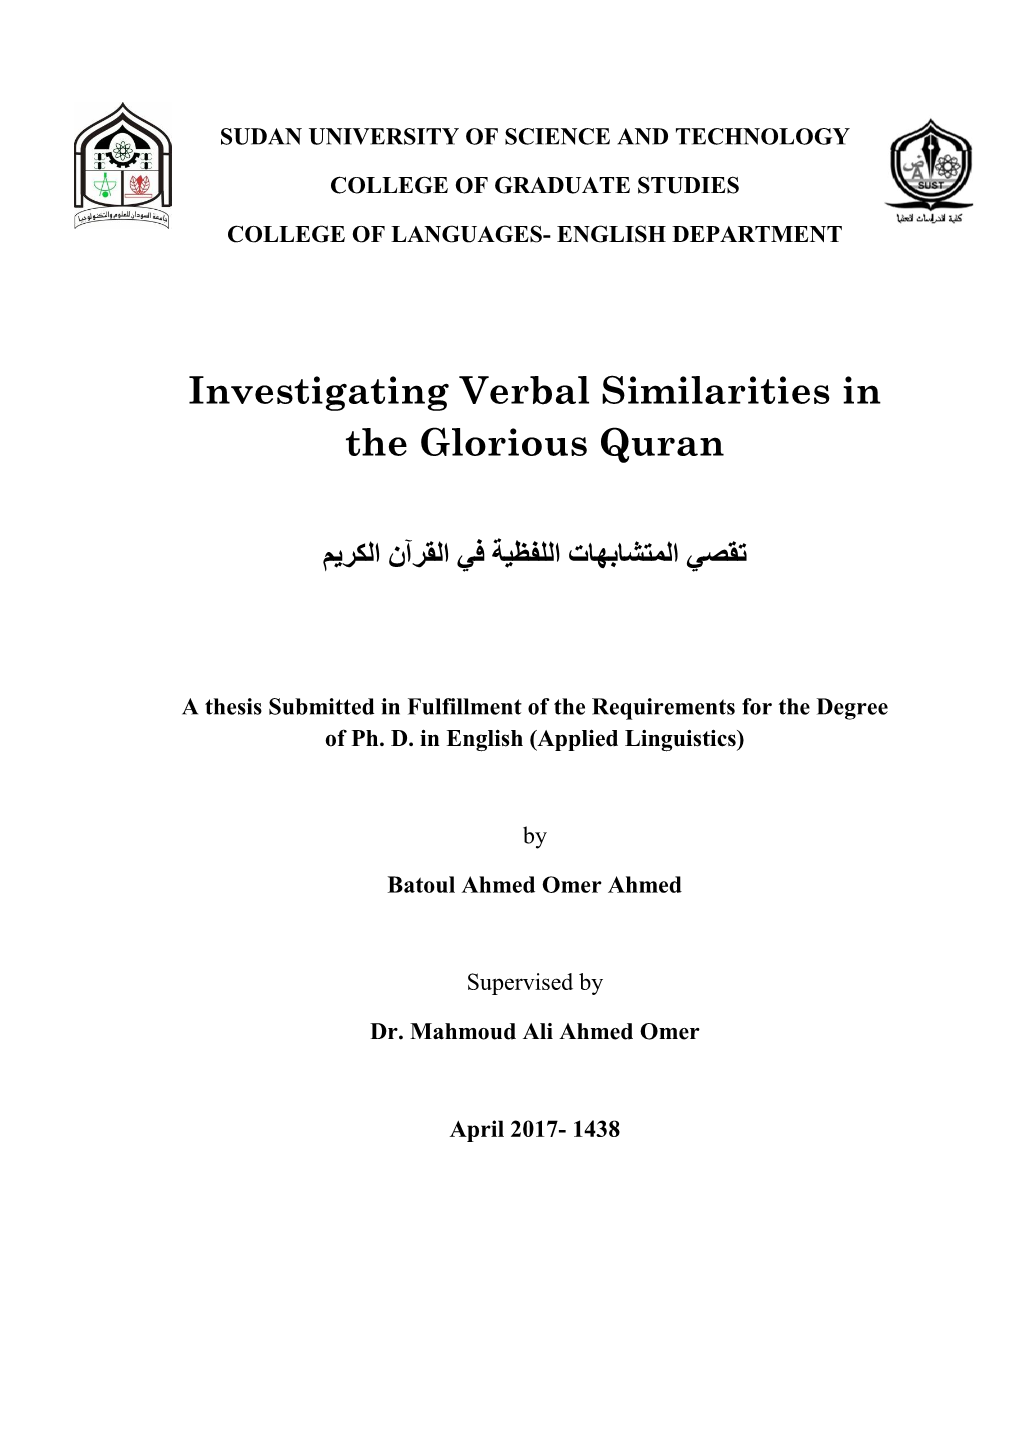 Investigating Verbal Similarities in the Glorious Quran